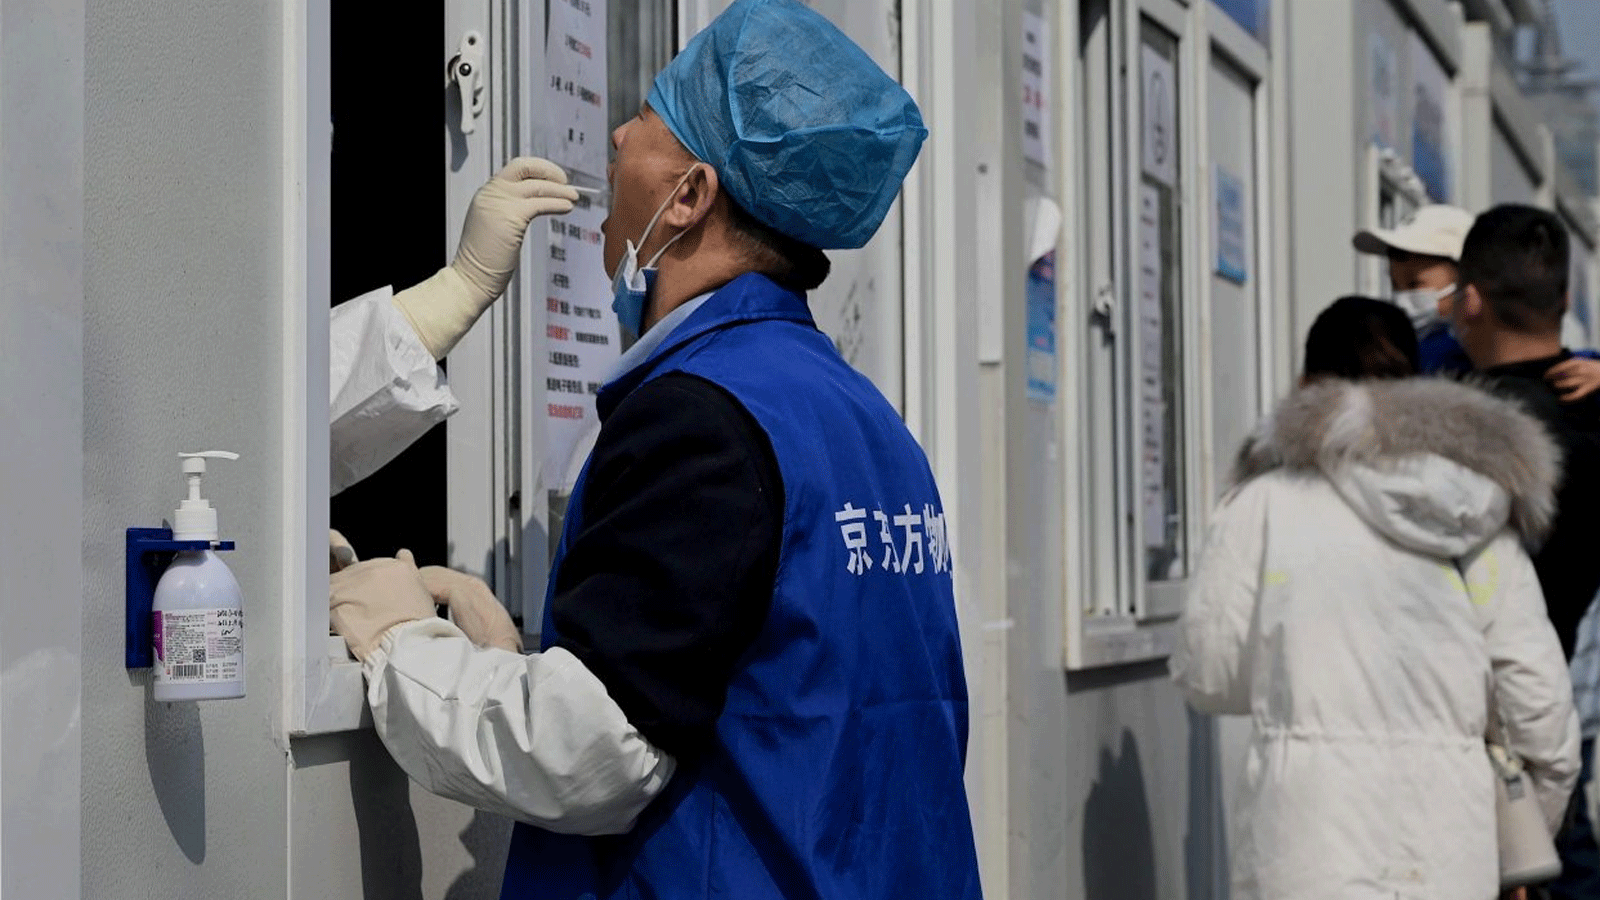  عاملٌ صحي يحصل على مسحة من امرأة لفحص فيروس كورونا Covid-19 في موقع جمع المسحات في بكين